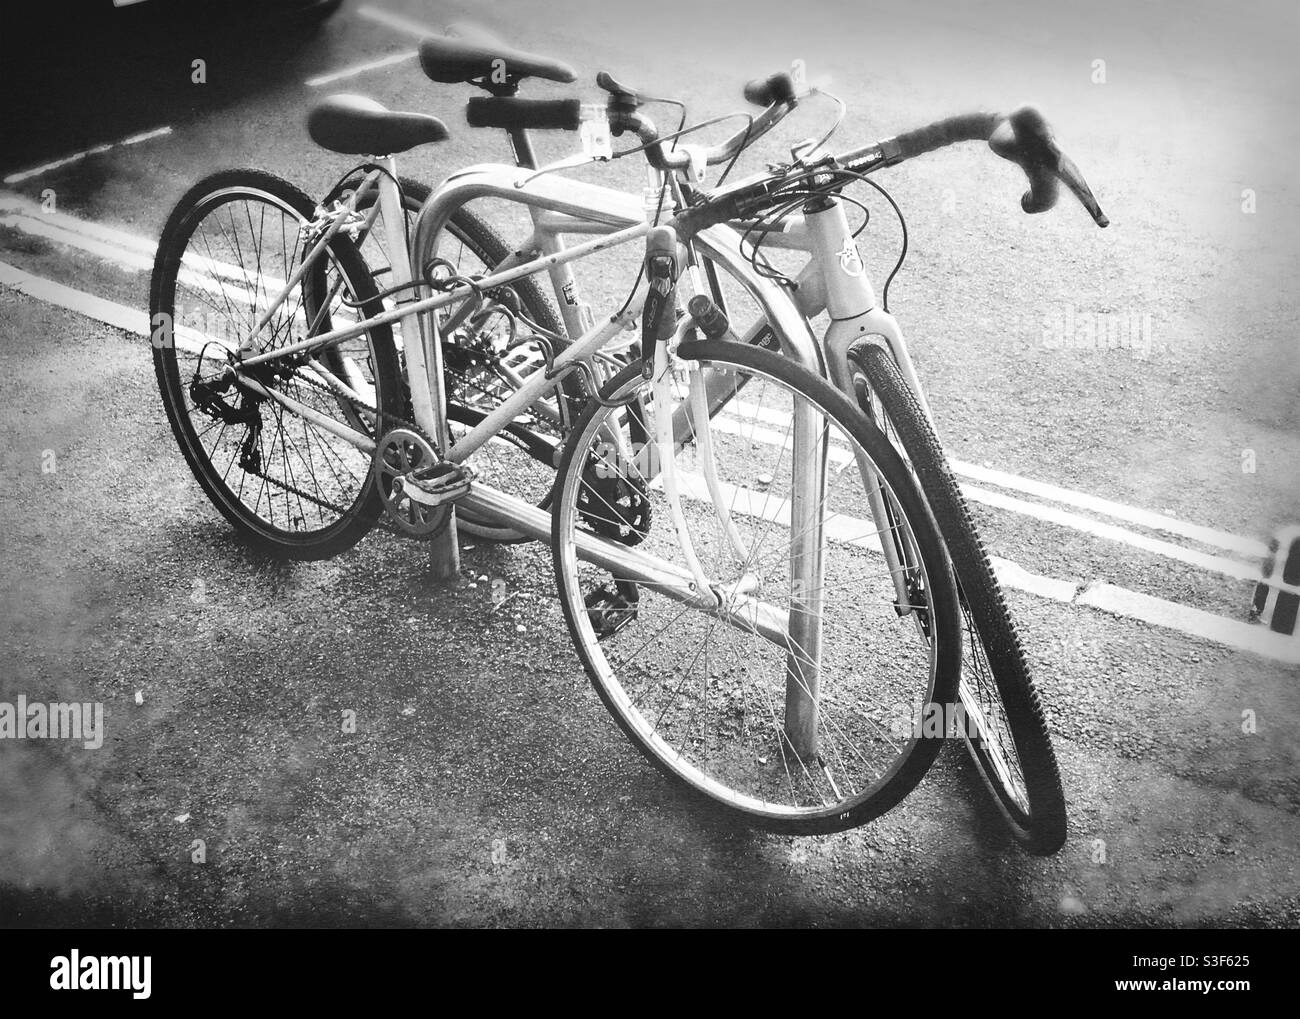 Bristol, Inghilterra, Regno Unito - Maggio 2021: Due biciclette appoggiate su un semplice stand in metallo sul marciapiede, con doppie linee gialle sul bordo della strada Foto Stock